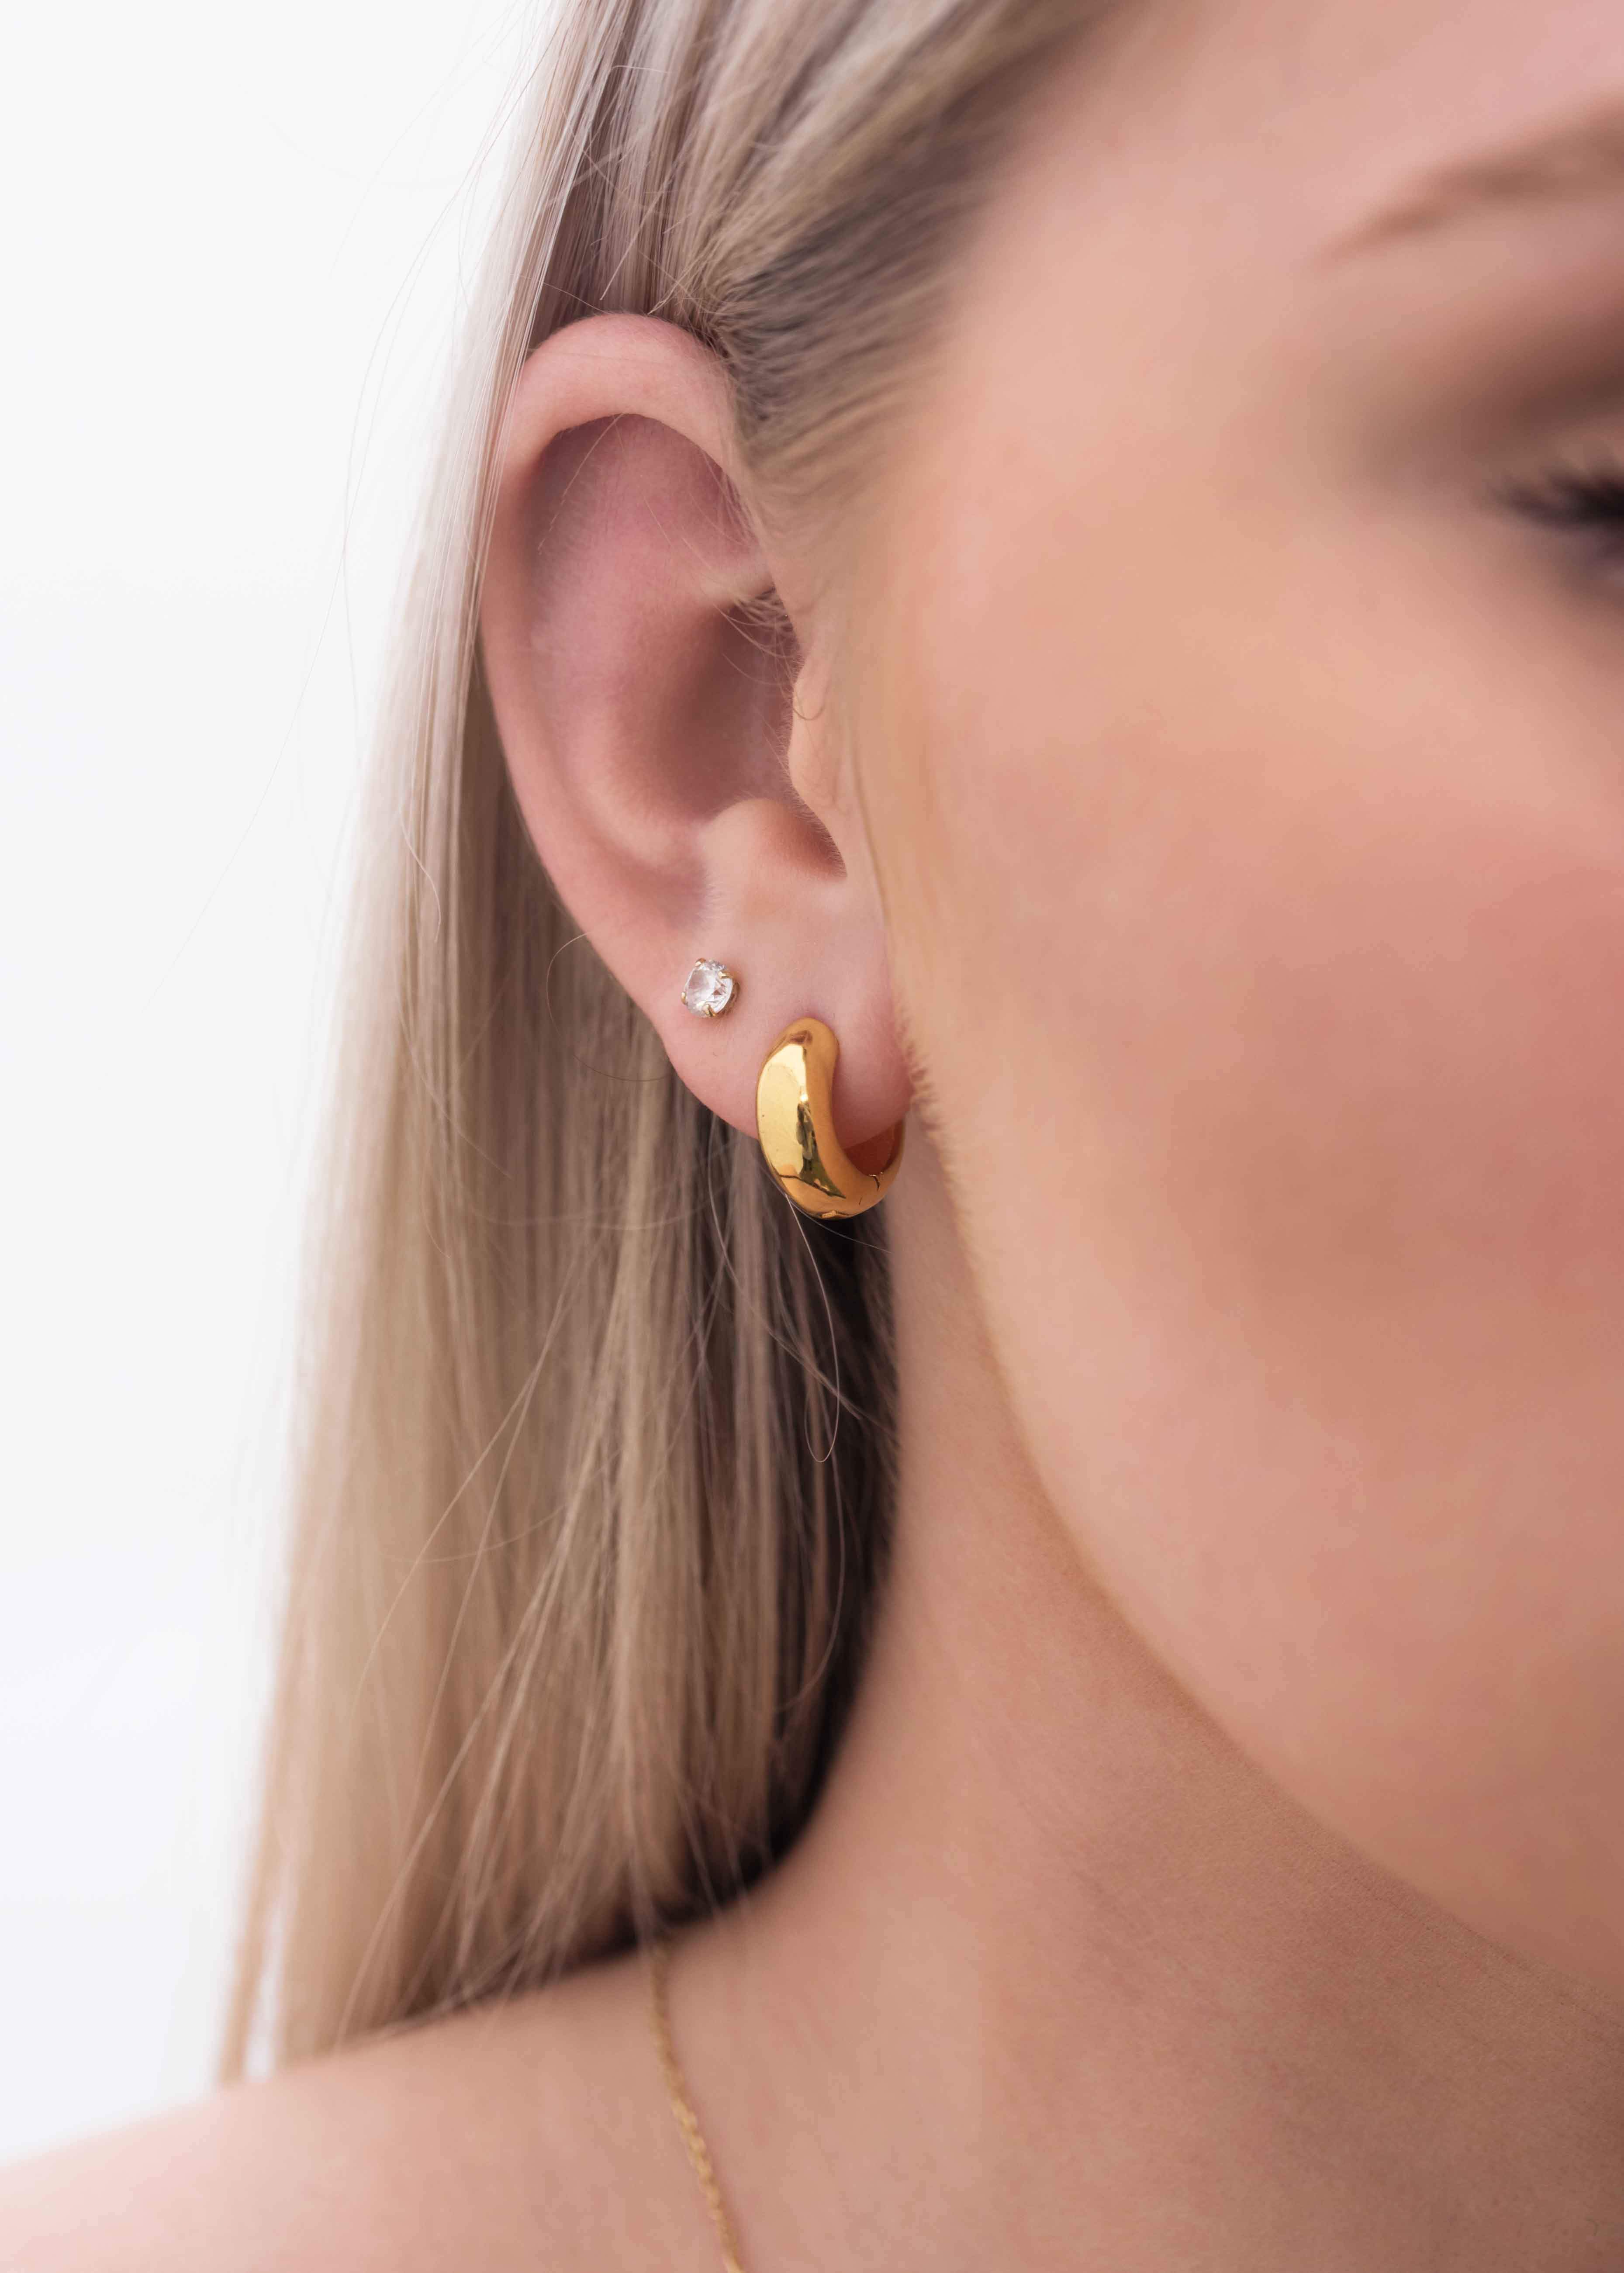 Small Gold Hoop Earrings Gold Huggie Earrings Small Hoop Earrings Silver  Small Hoop Earrings Rose Gold Hoops Earrings Bridesmaid Gift